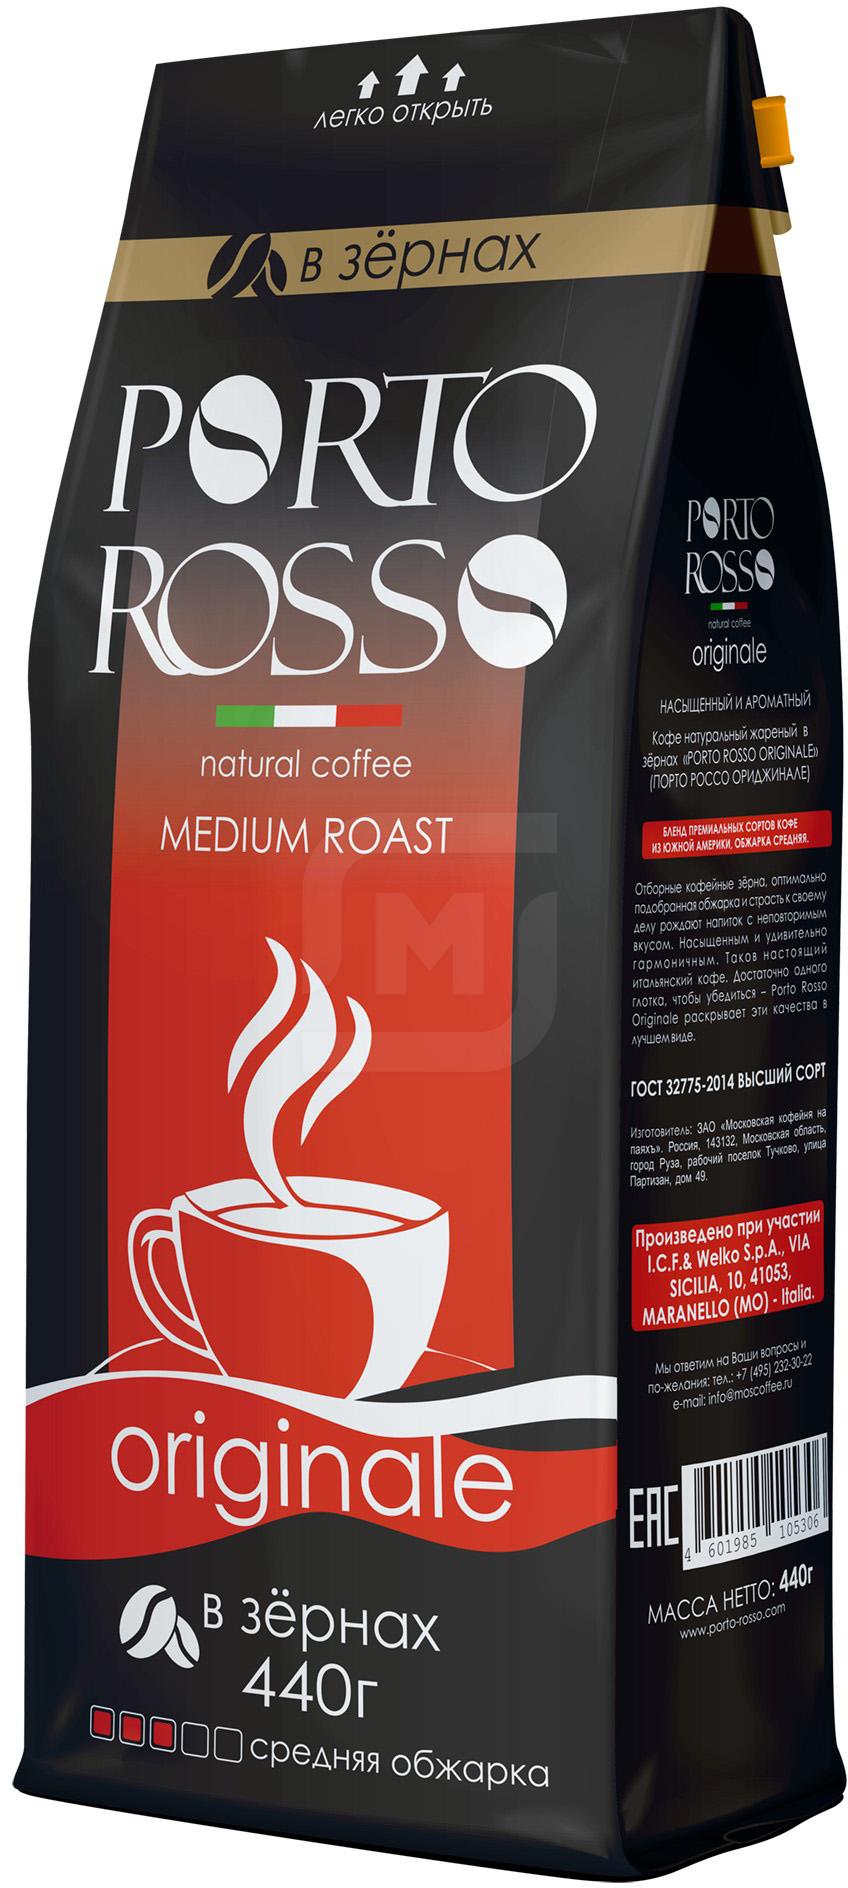 Кофе Porto Rosso Original в зернах 440 г